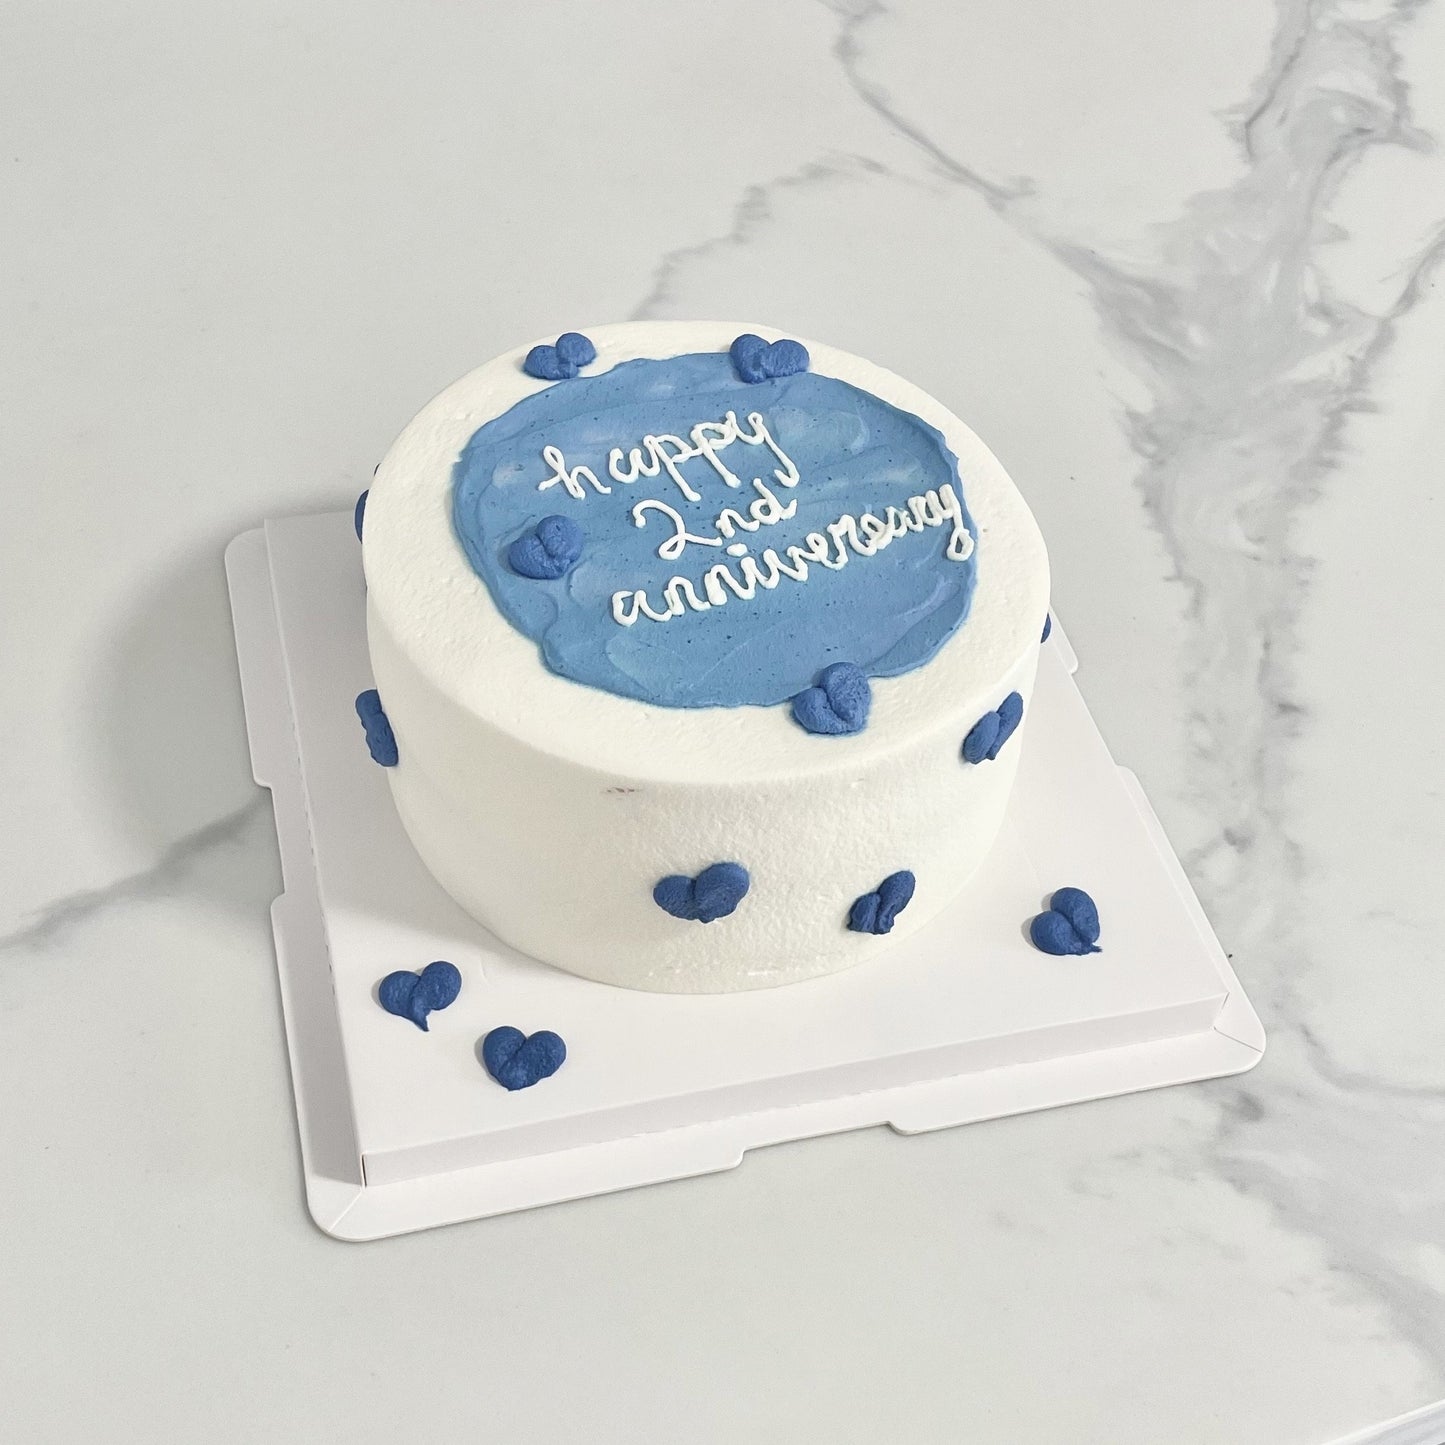 Heart Anniversary/Birthday Cake